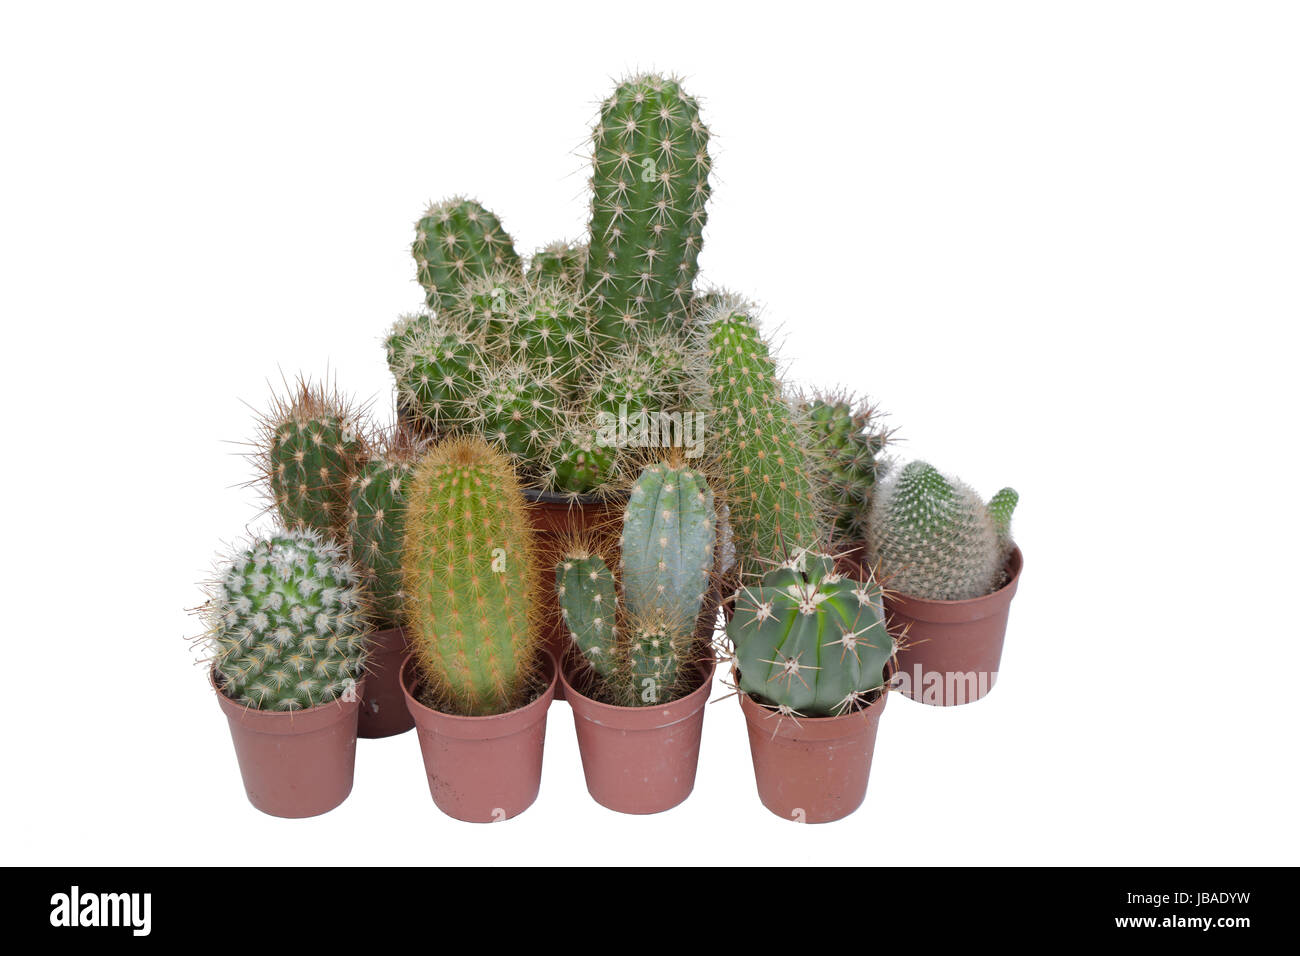 Many specimen of cactus, isolated on white background Stock Photo